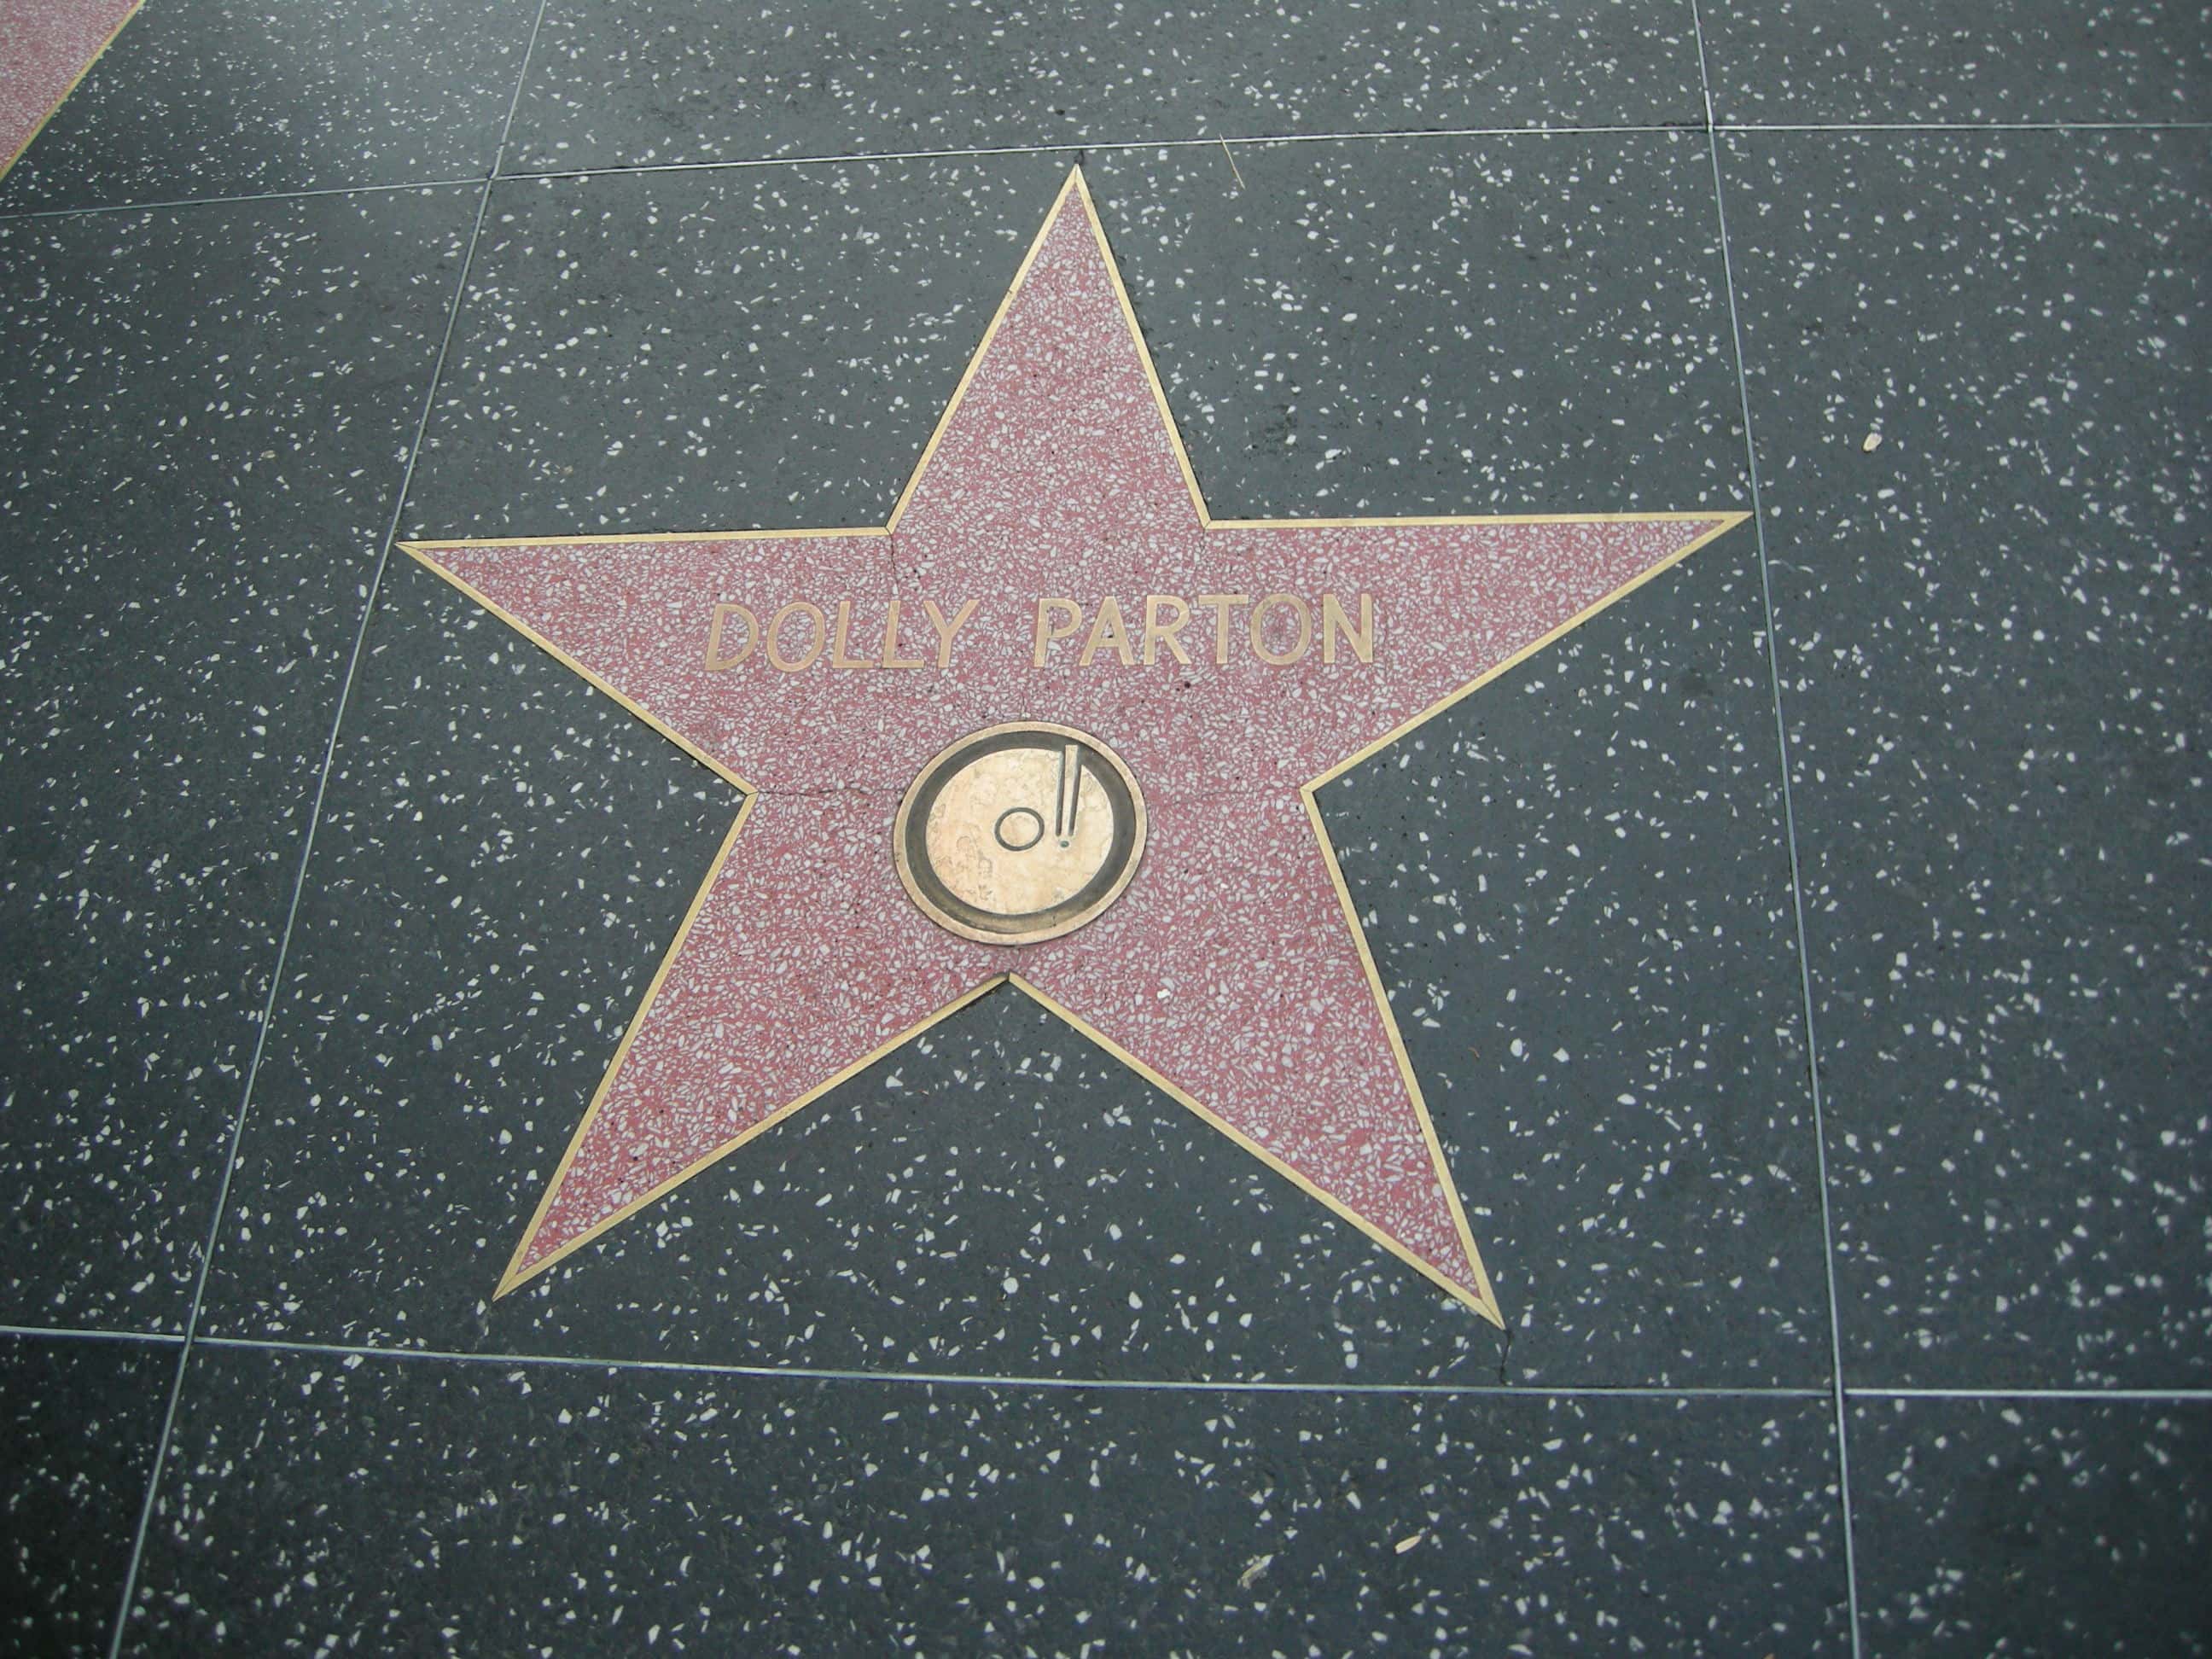 Dolly Parton Facts